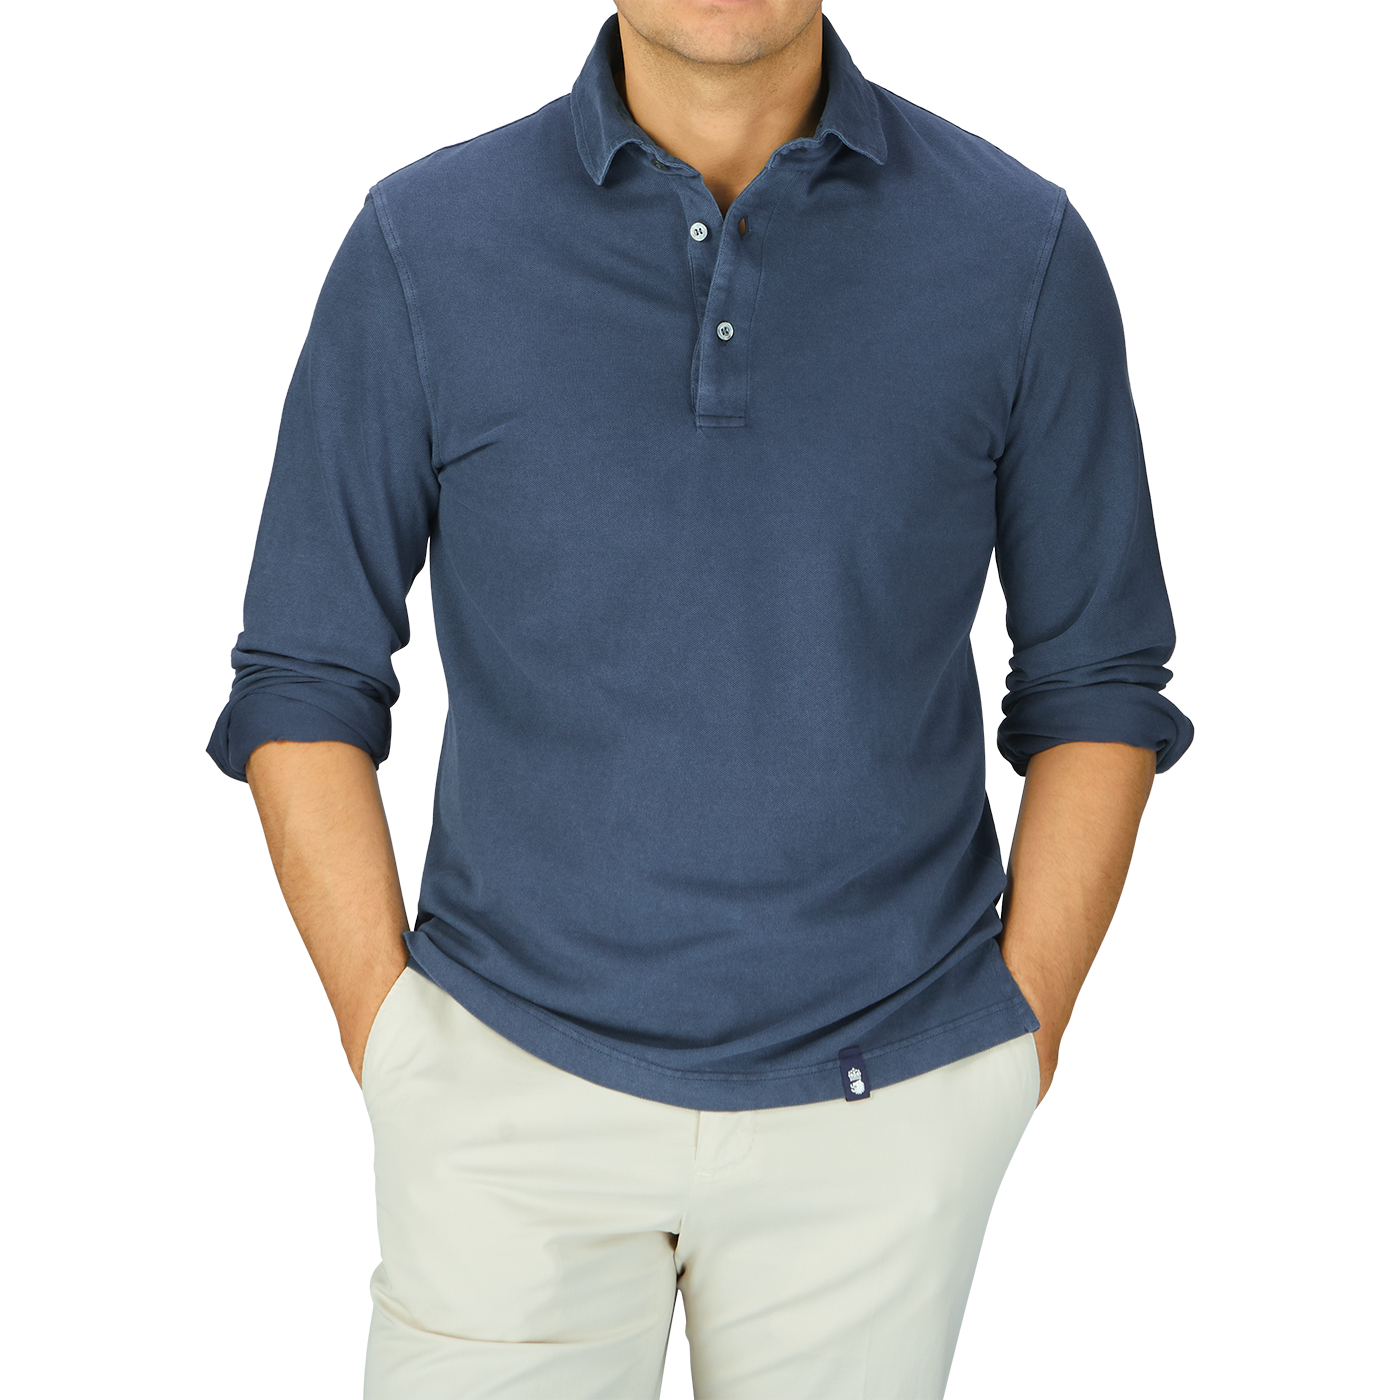 A man wearing a Drumohr Medium Blue Cotton Piquet LS Polo Shirt and khaki pants.